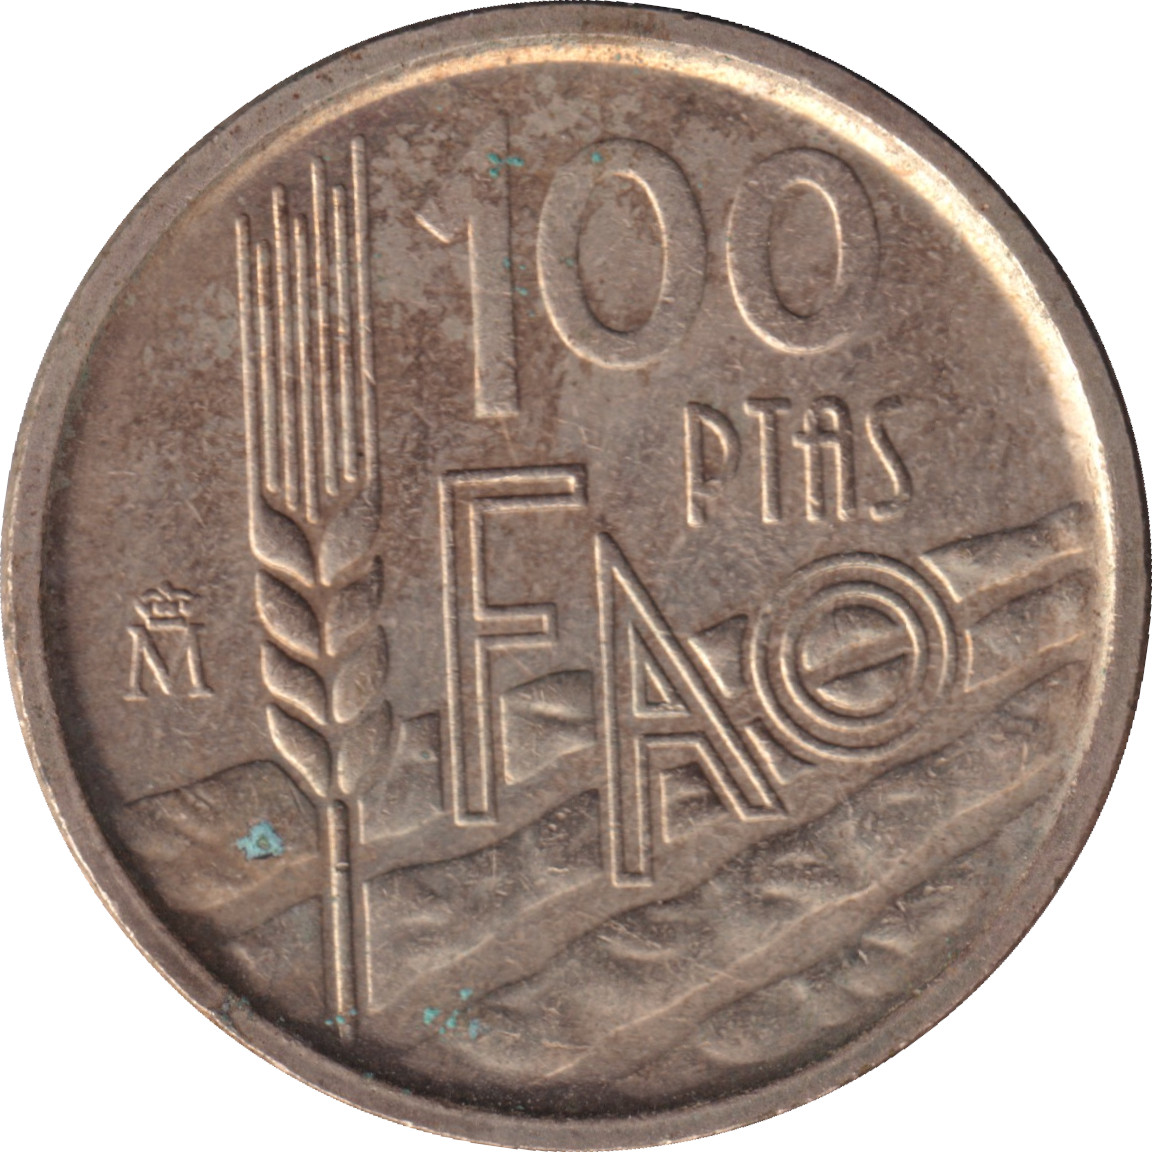 100 pesetas - FAO